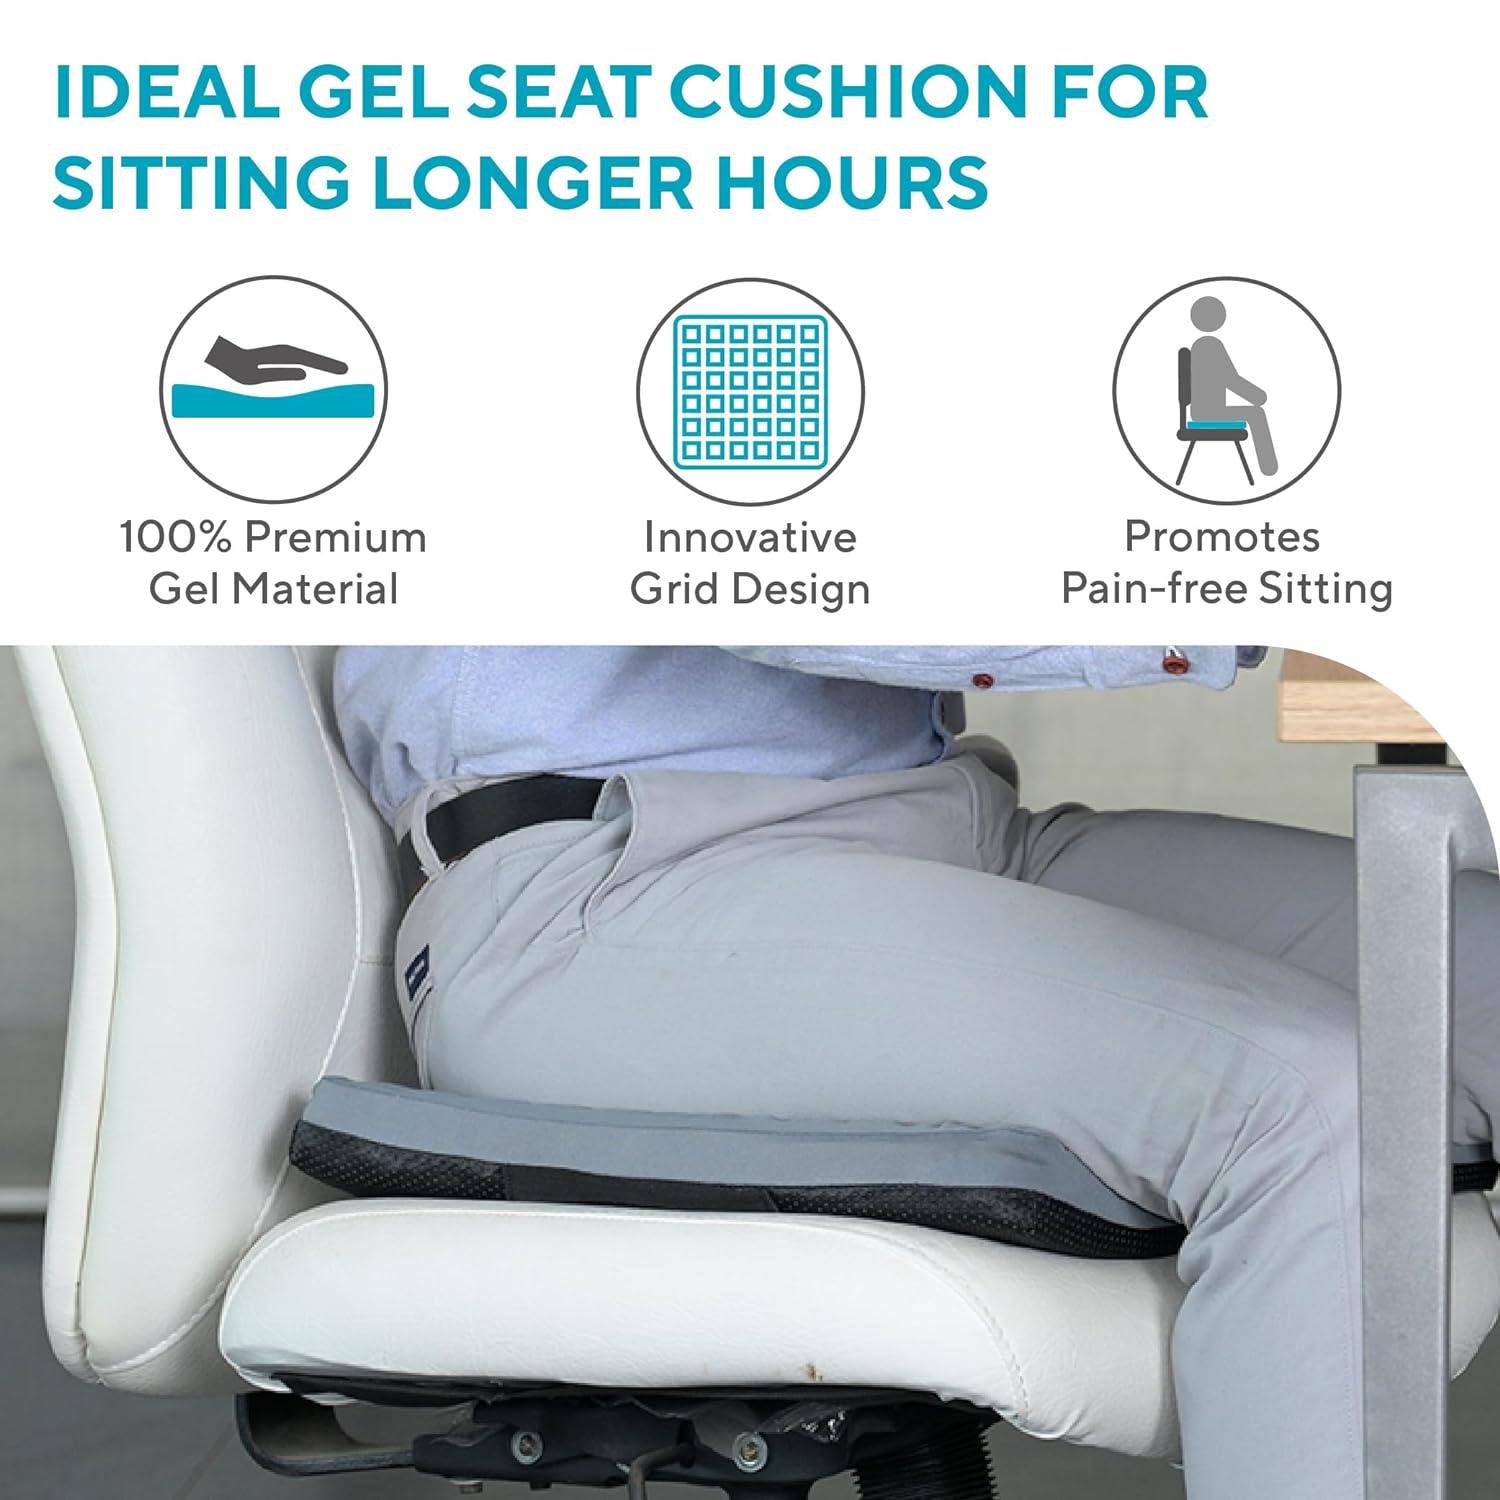 GELRIDE Advanced Gel Seat Cushion – Fovera